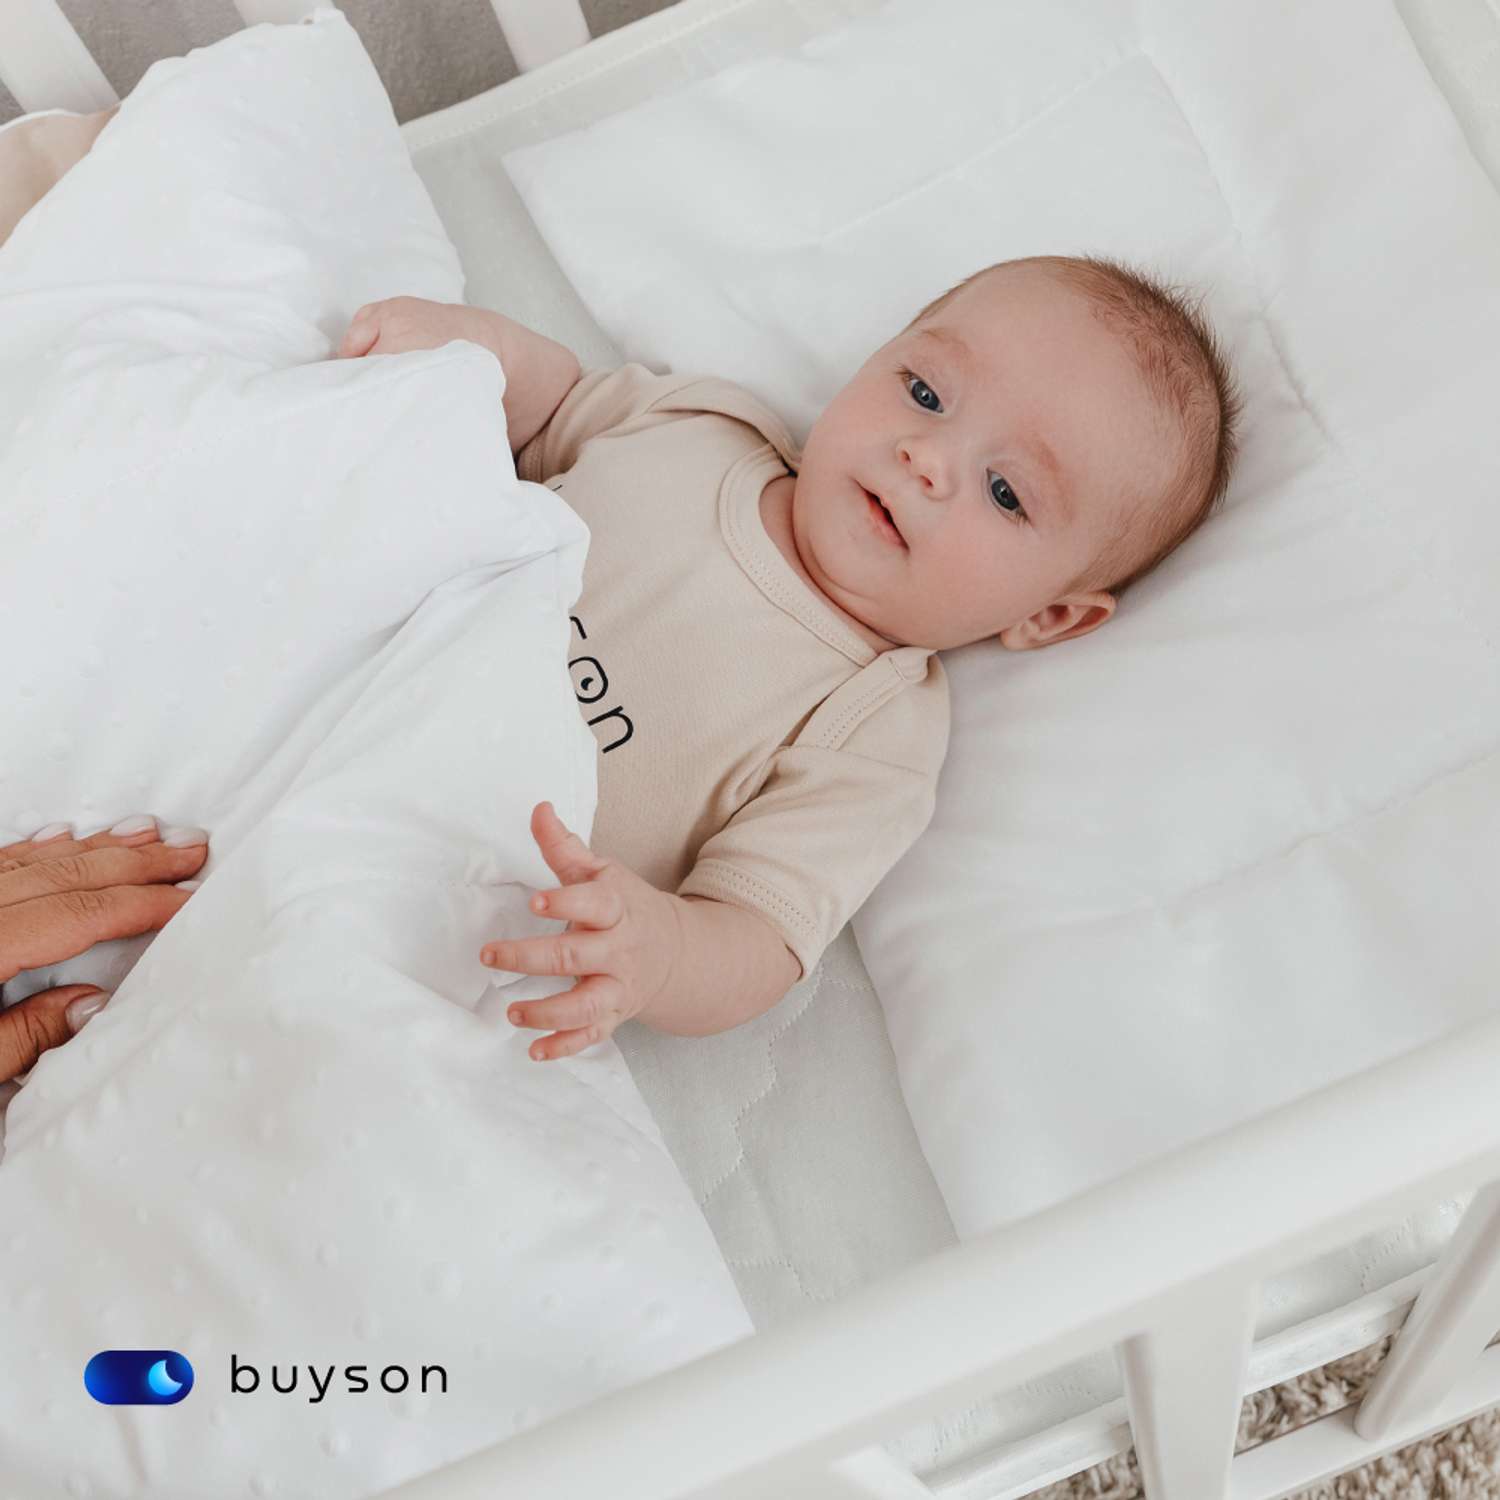 Анатомическая подушка buyson BuyMini для новорожденных от 0 до 3 лет 35х55 см высота 3 см - фото 6